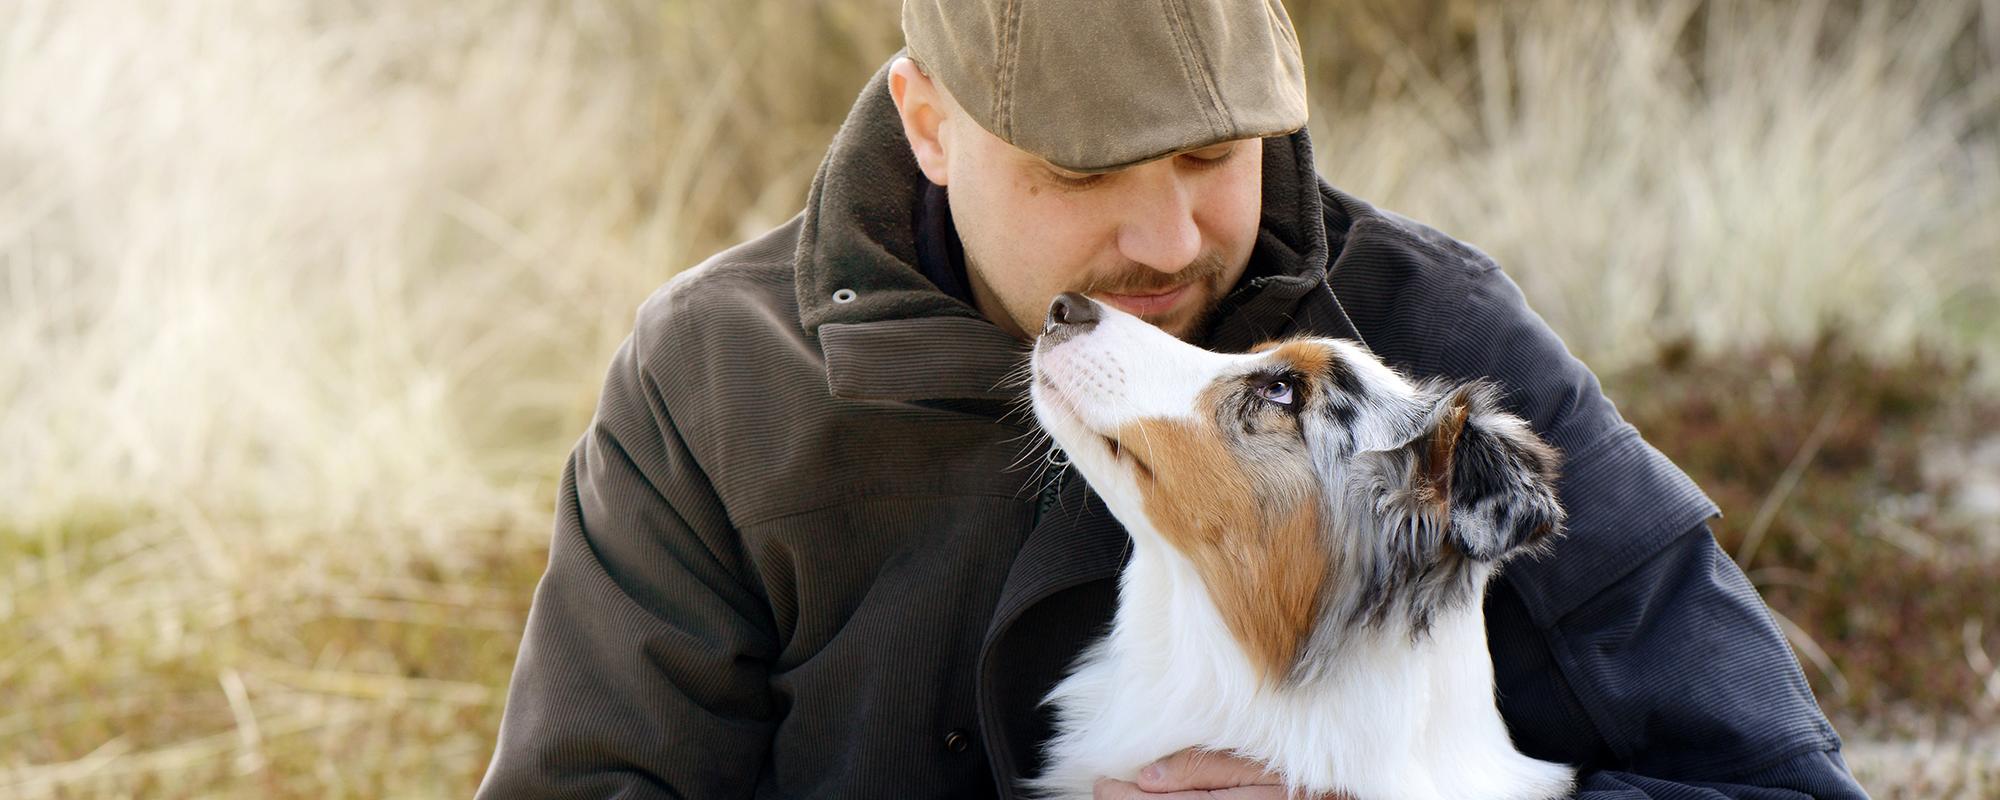 Hunde verfügen nebst kognitiven Fähigkeiten über fast die gleichen Emotionen wie Menschen